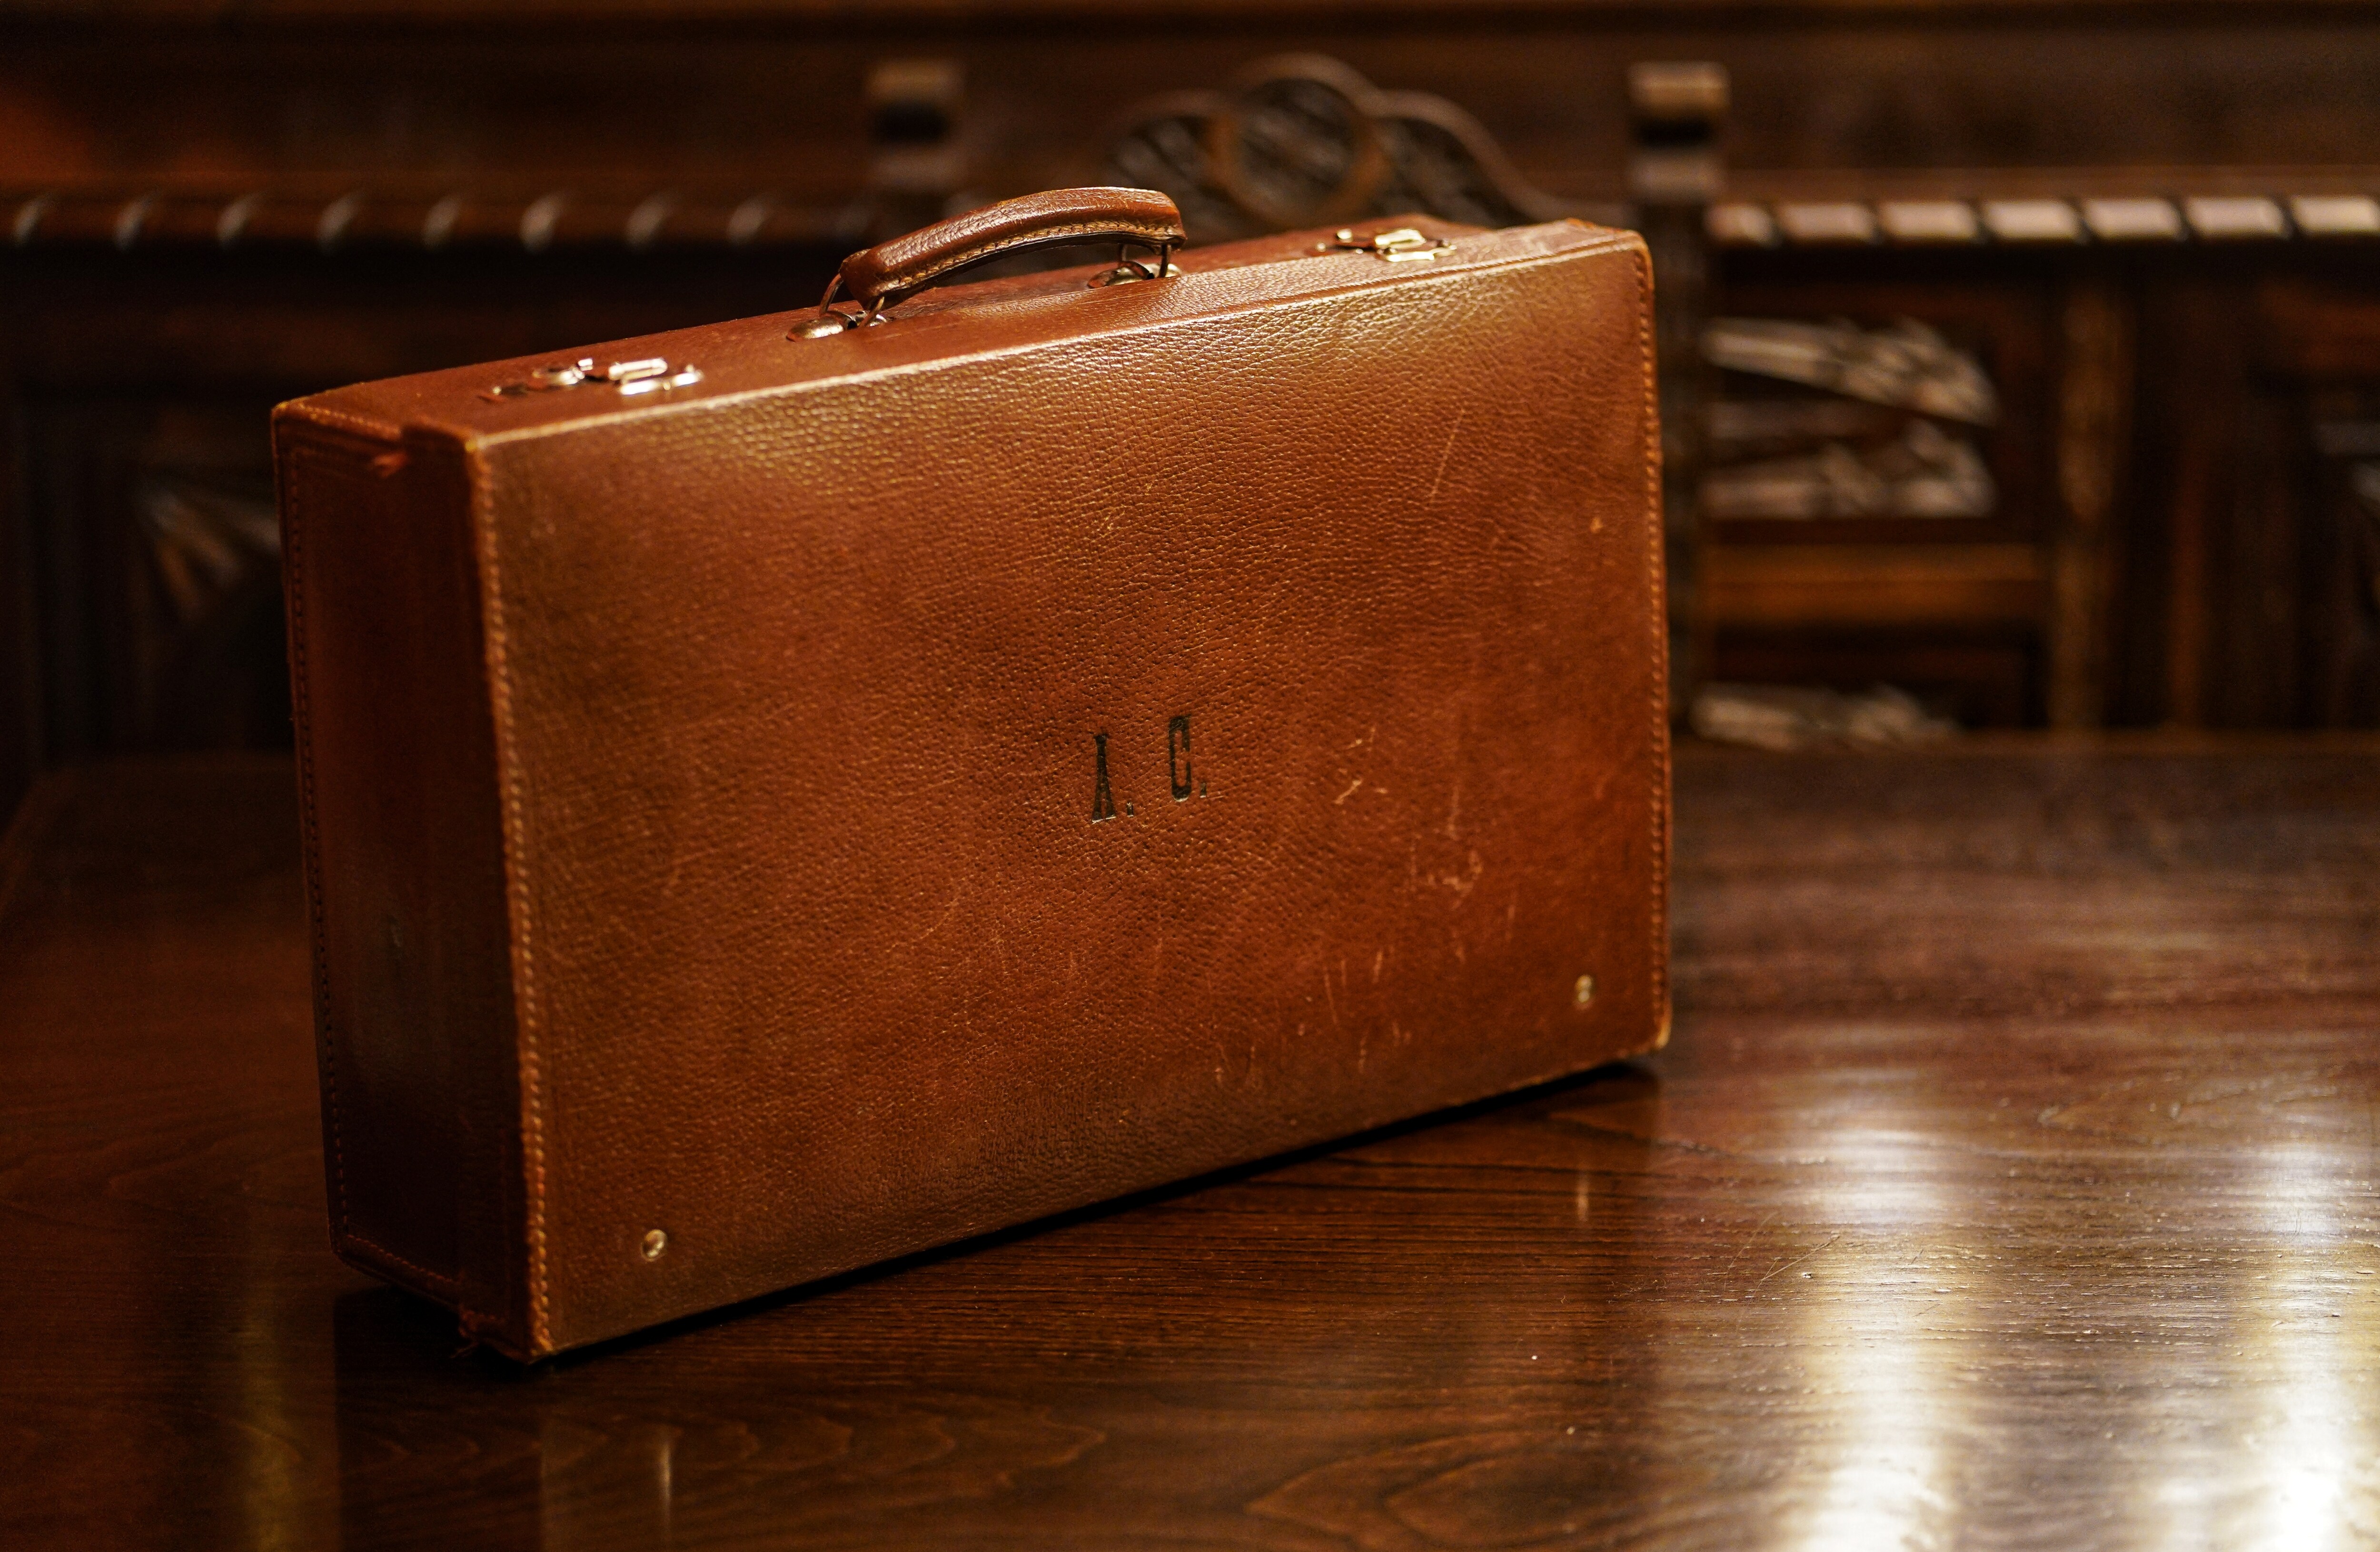 La maleta de cuero con las iniciales de Ángel Careaga.